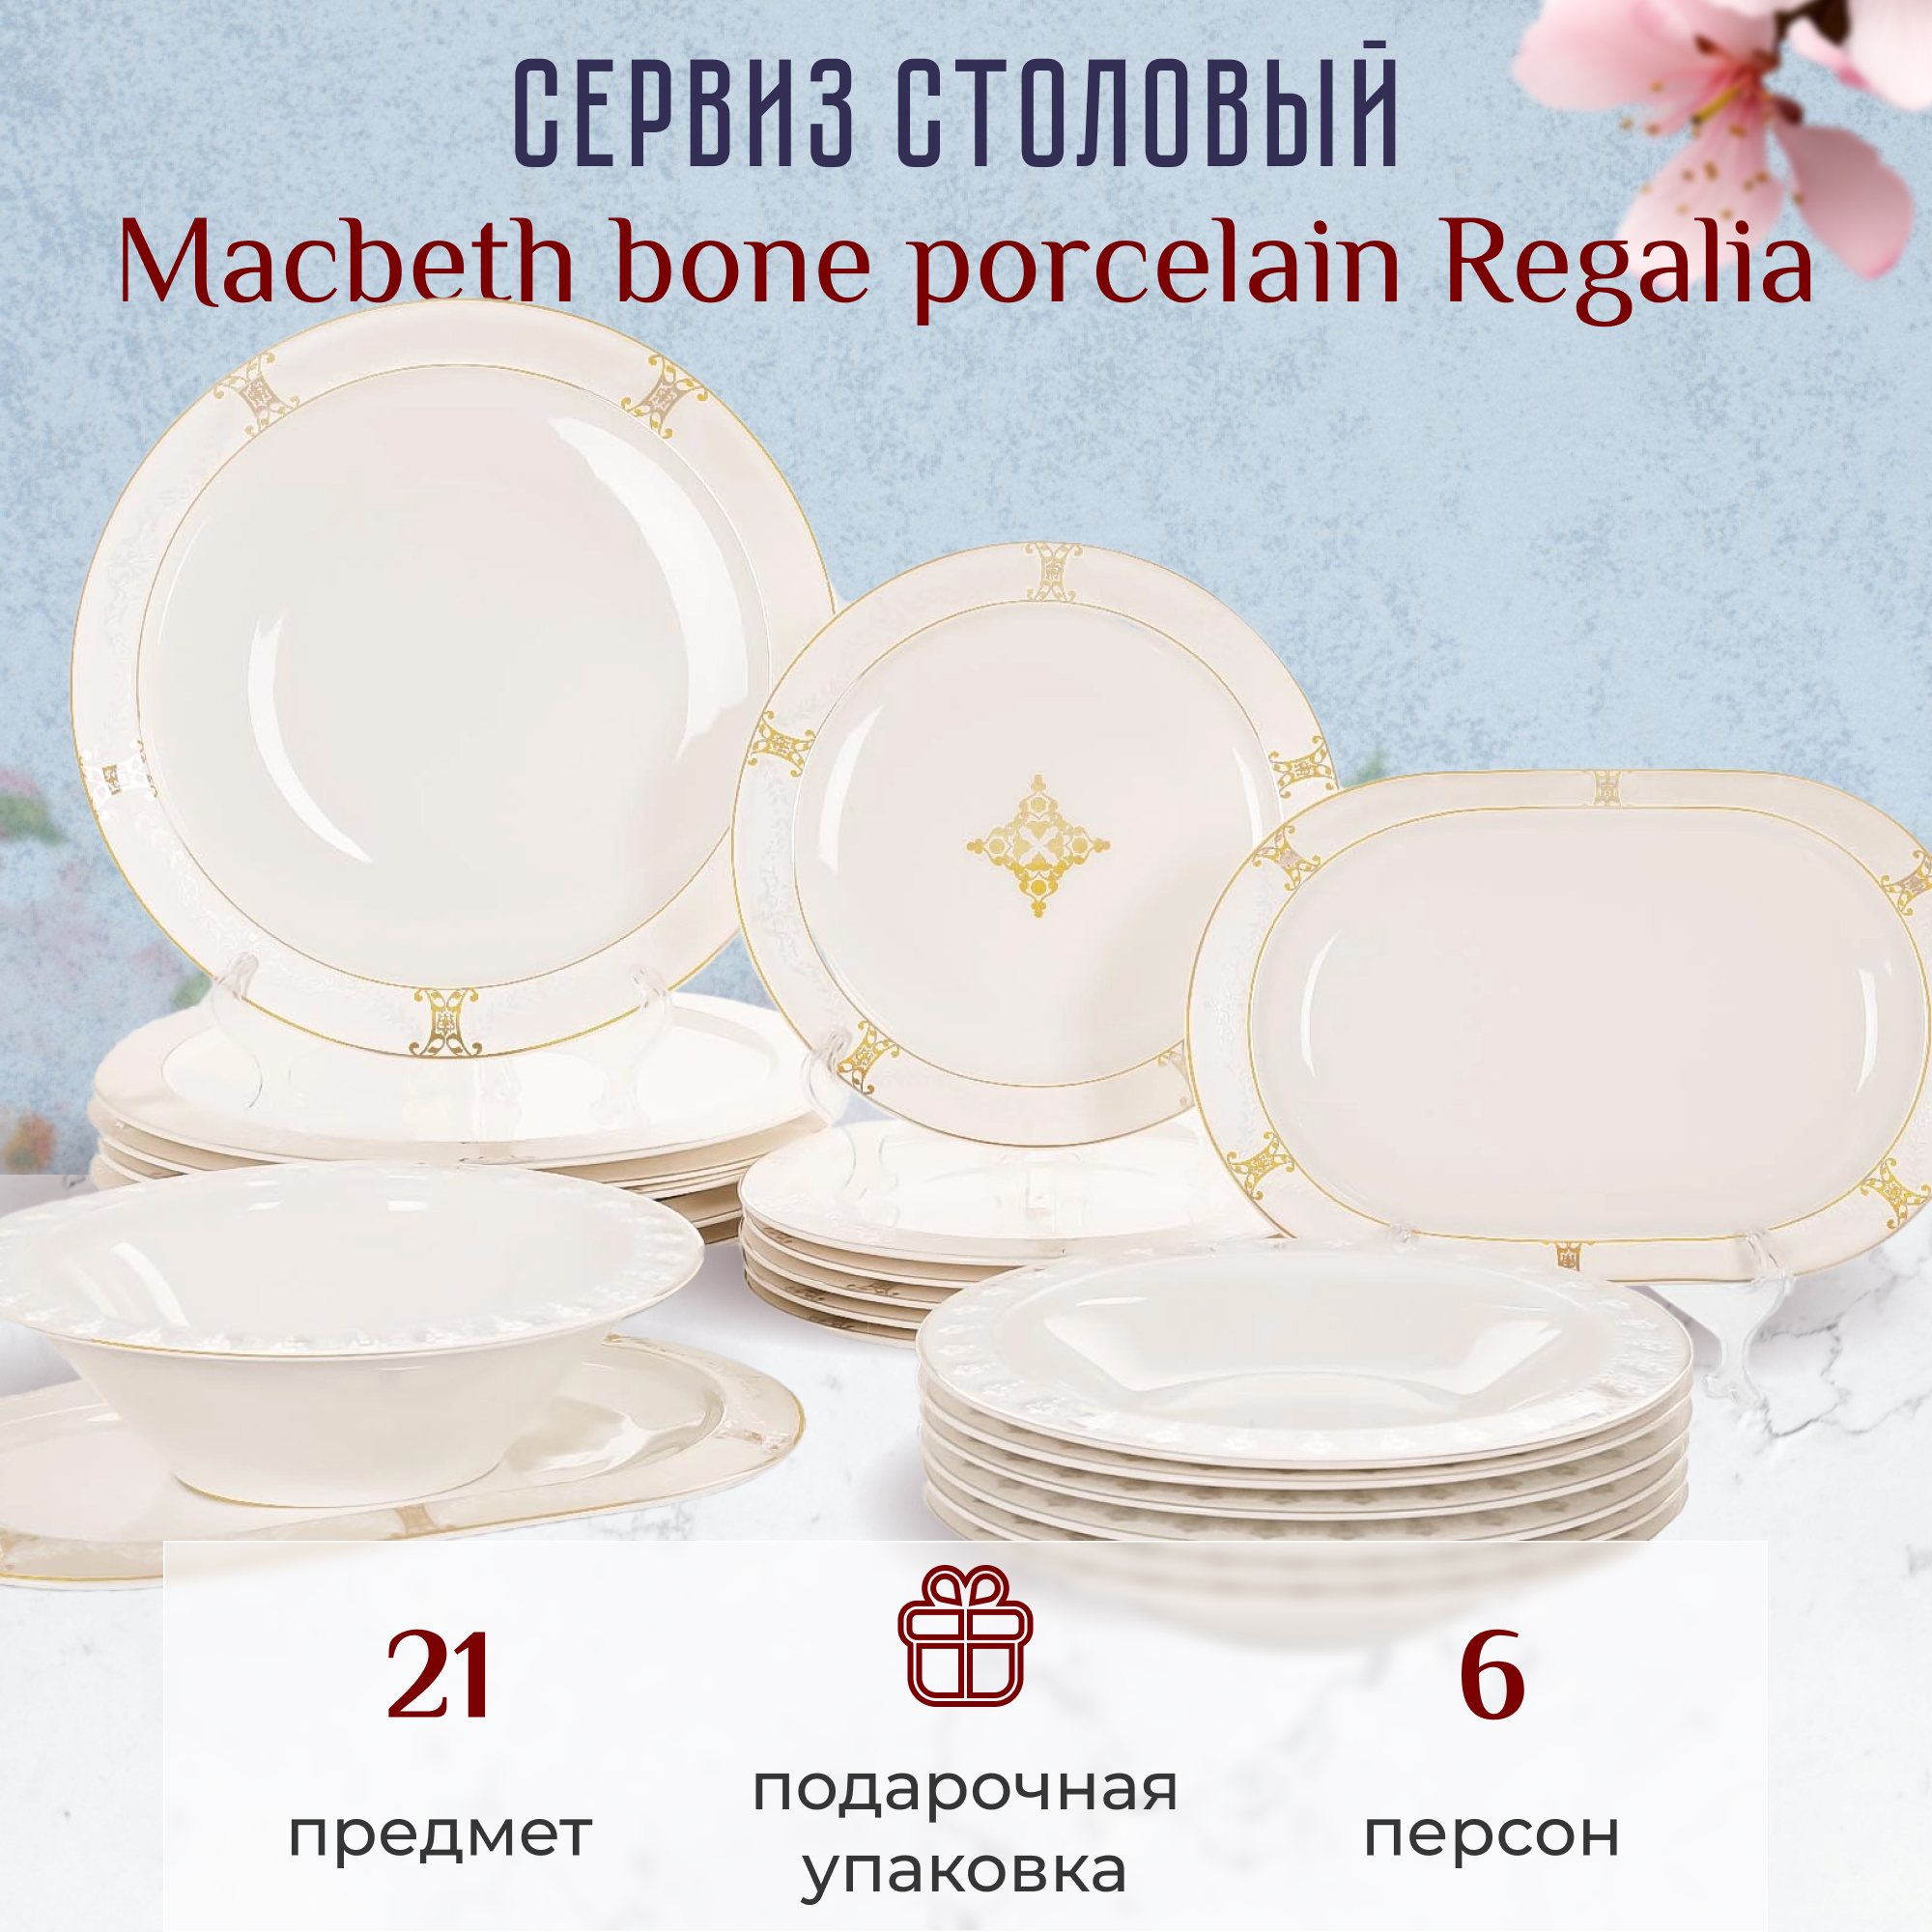 Сервиз столовый Macbeth bone porcelain Regalia 21 предмет 6 персон - фото 3